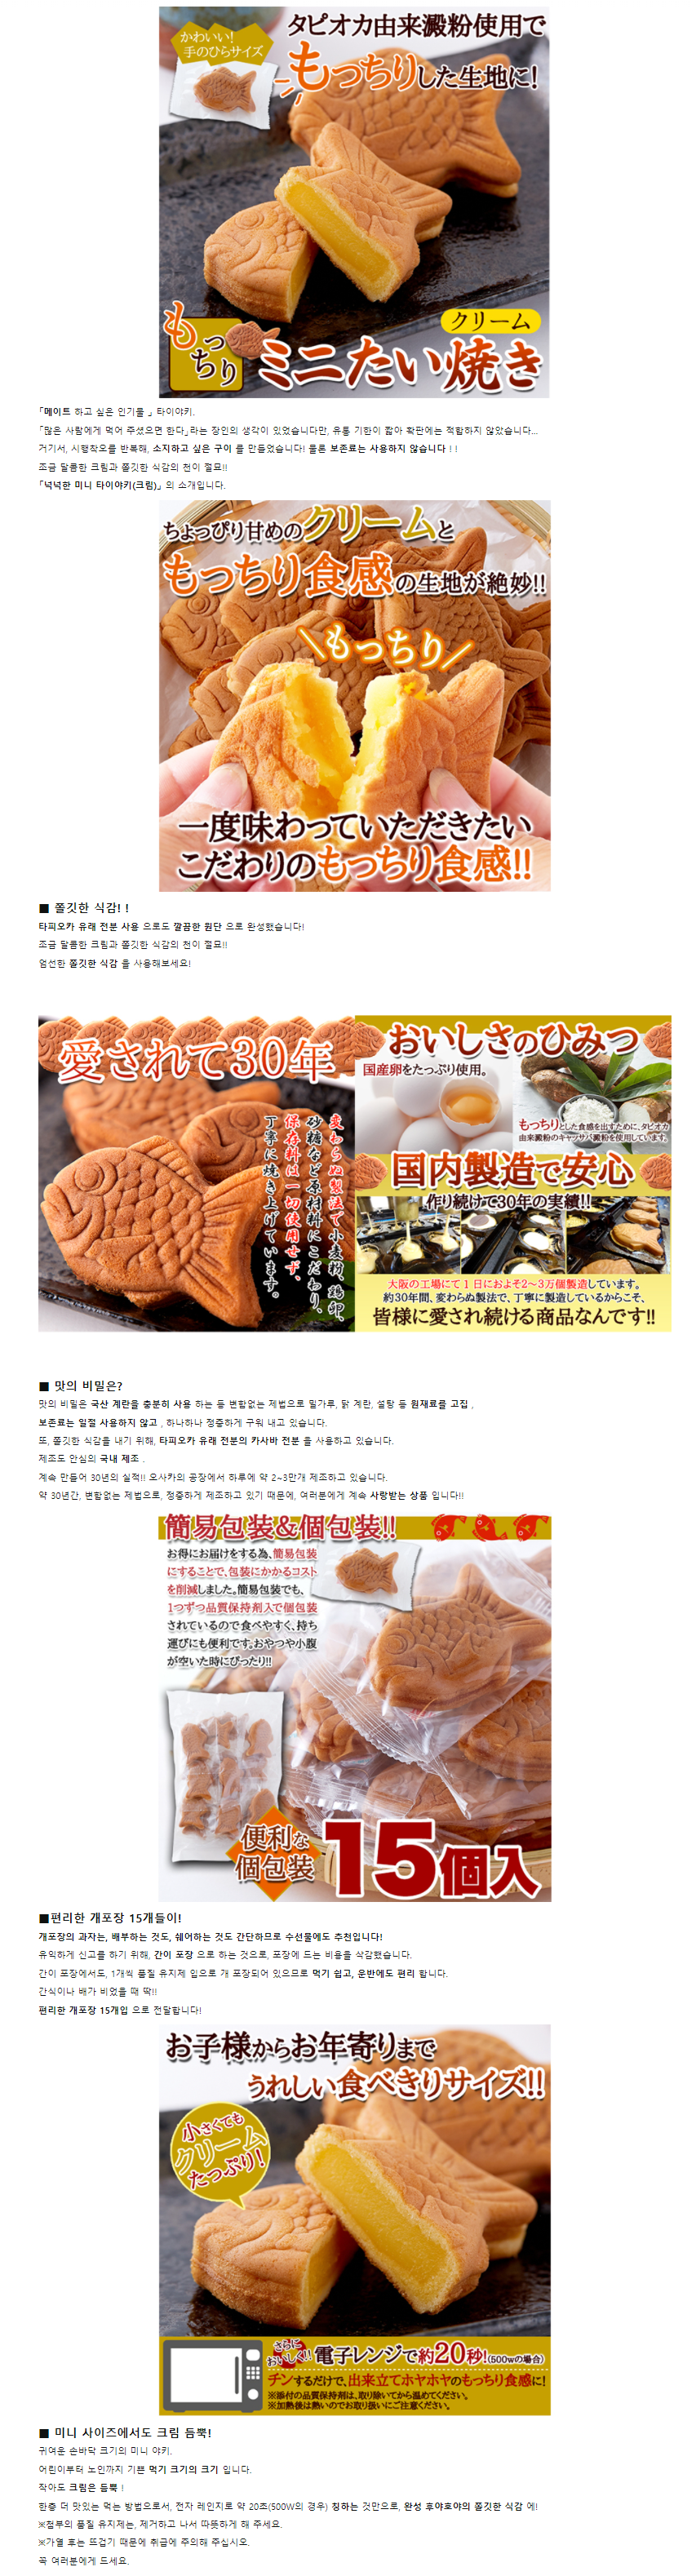 타다 제과 붕어빵 크림맛 | 일본직구 오사카맨